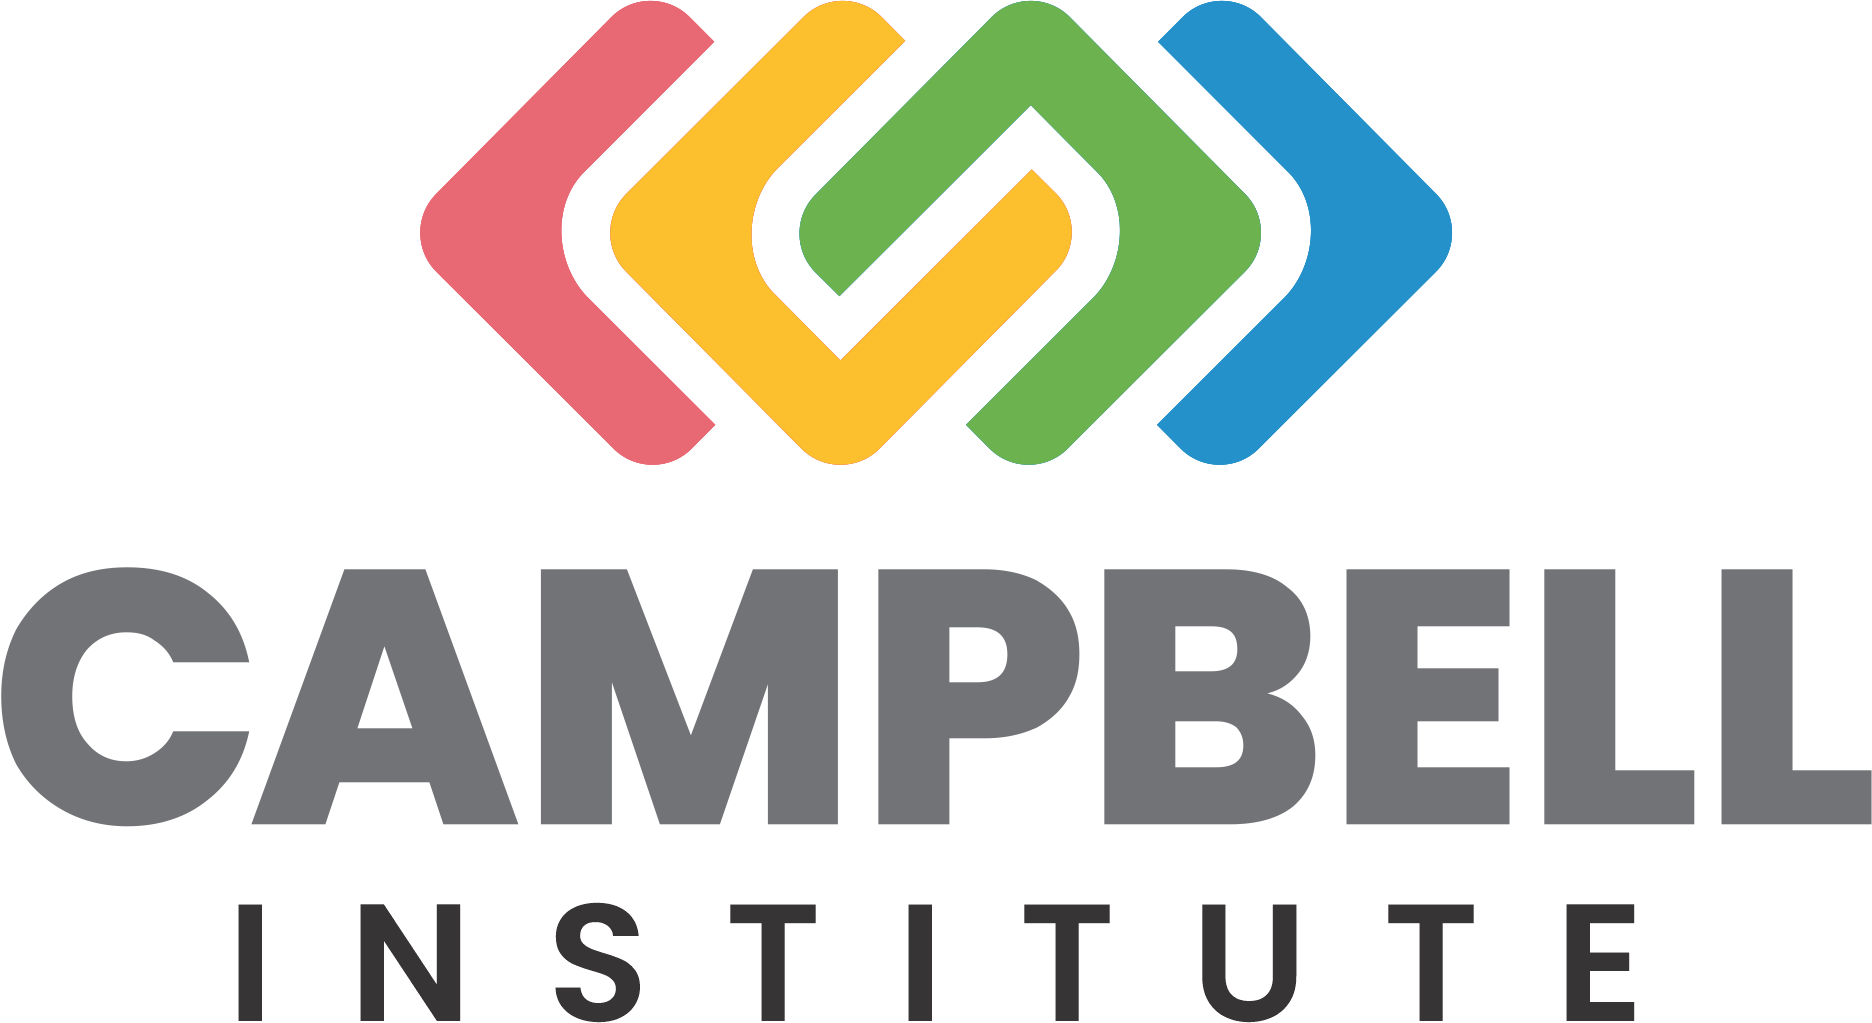 Campbell Institute